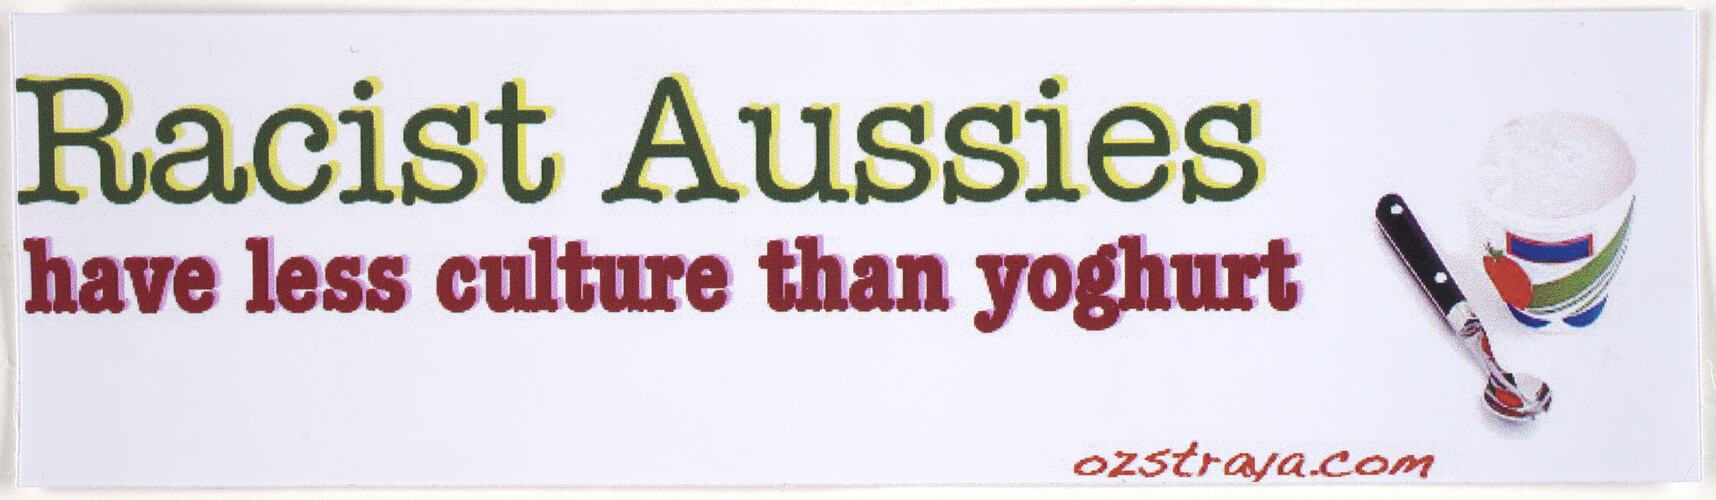 Sticker - 'Racist Aussies Have Less Culture Than Yoghurt', Australians Against Racism & Discrimination